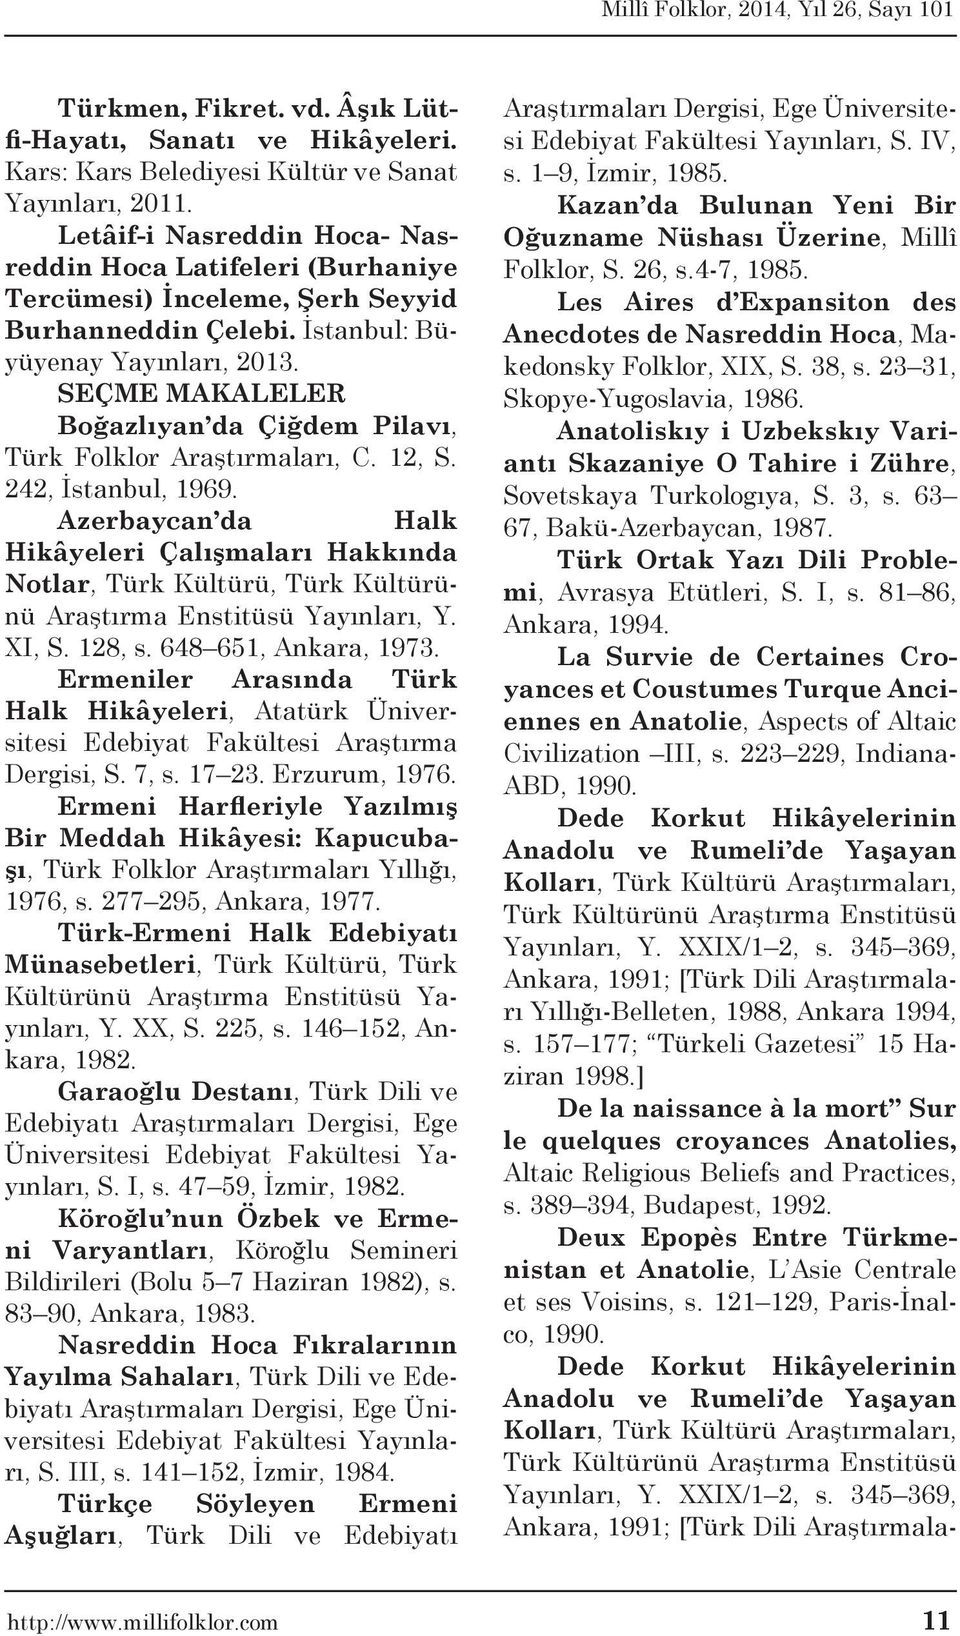 SEÇME MAKALELER Boğazlıyan da Çiğdem Pilavı, Türk Folklor Araştırmaları, C. 12, S. 242, İstanbul, 1969.